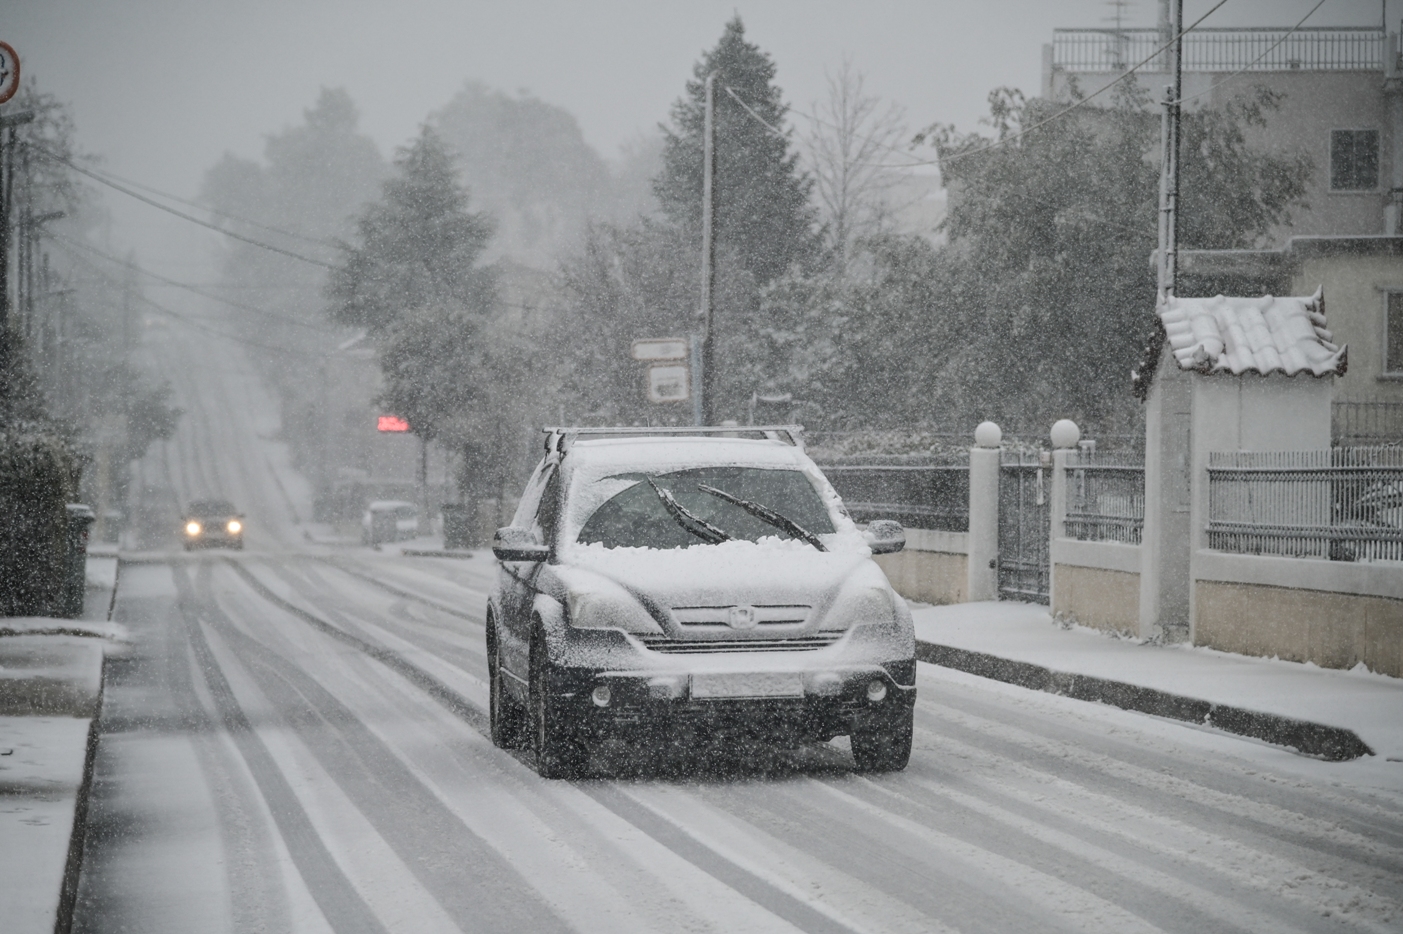 Δείτε αναλυτικά τι πρέπει να προσέχουμε κατά την οδήγηση στο χιόνι ή στον πάγο